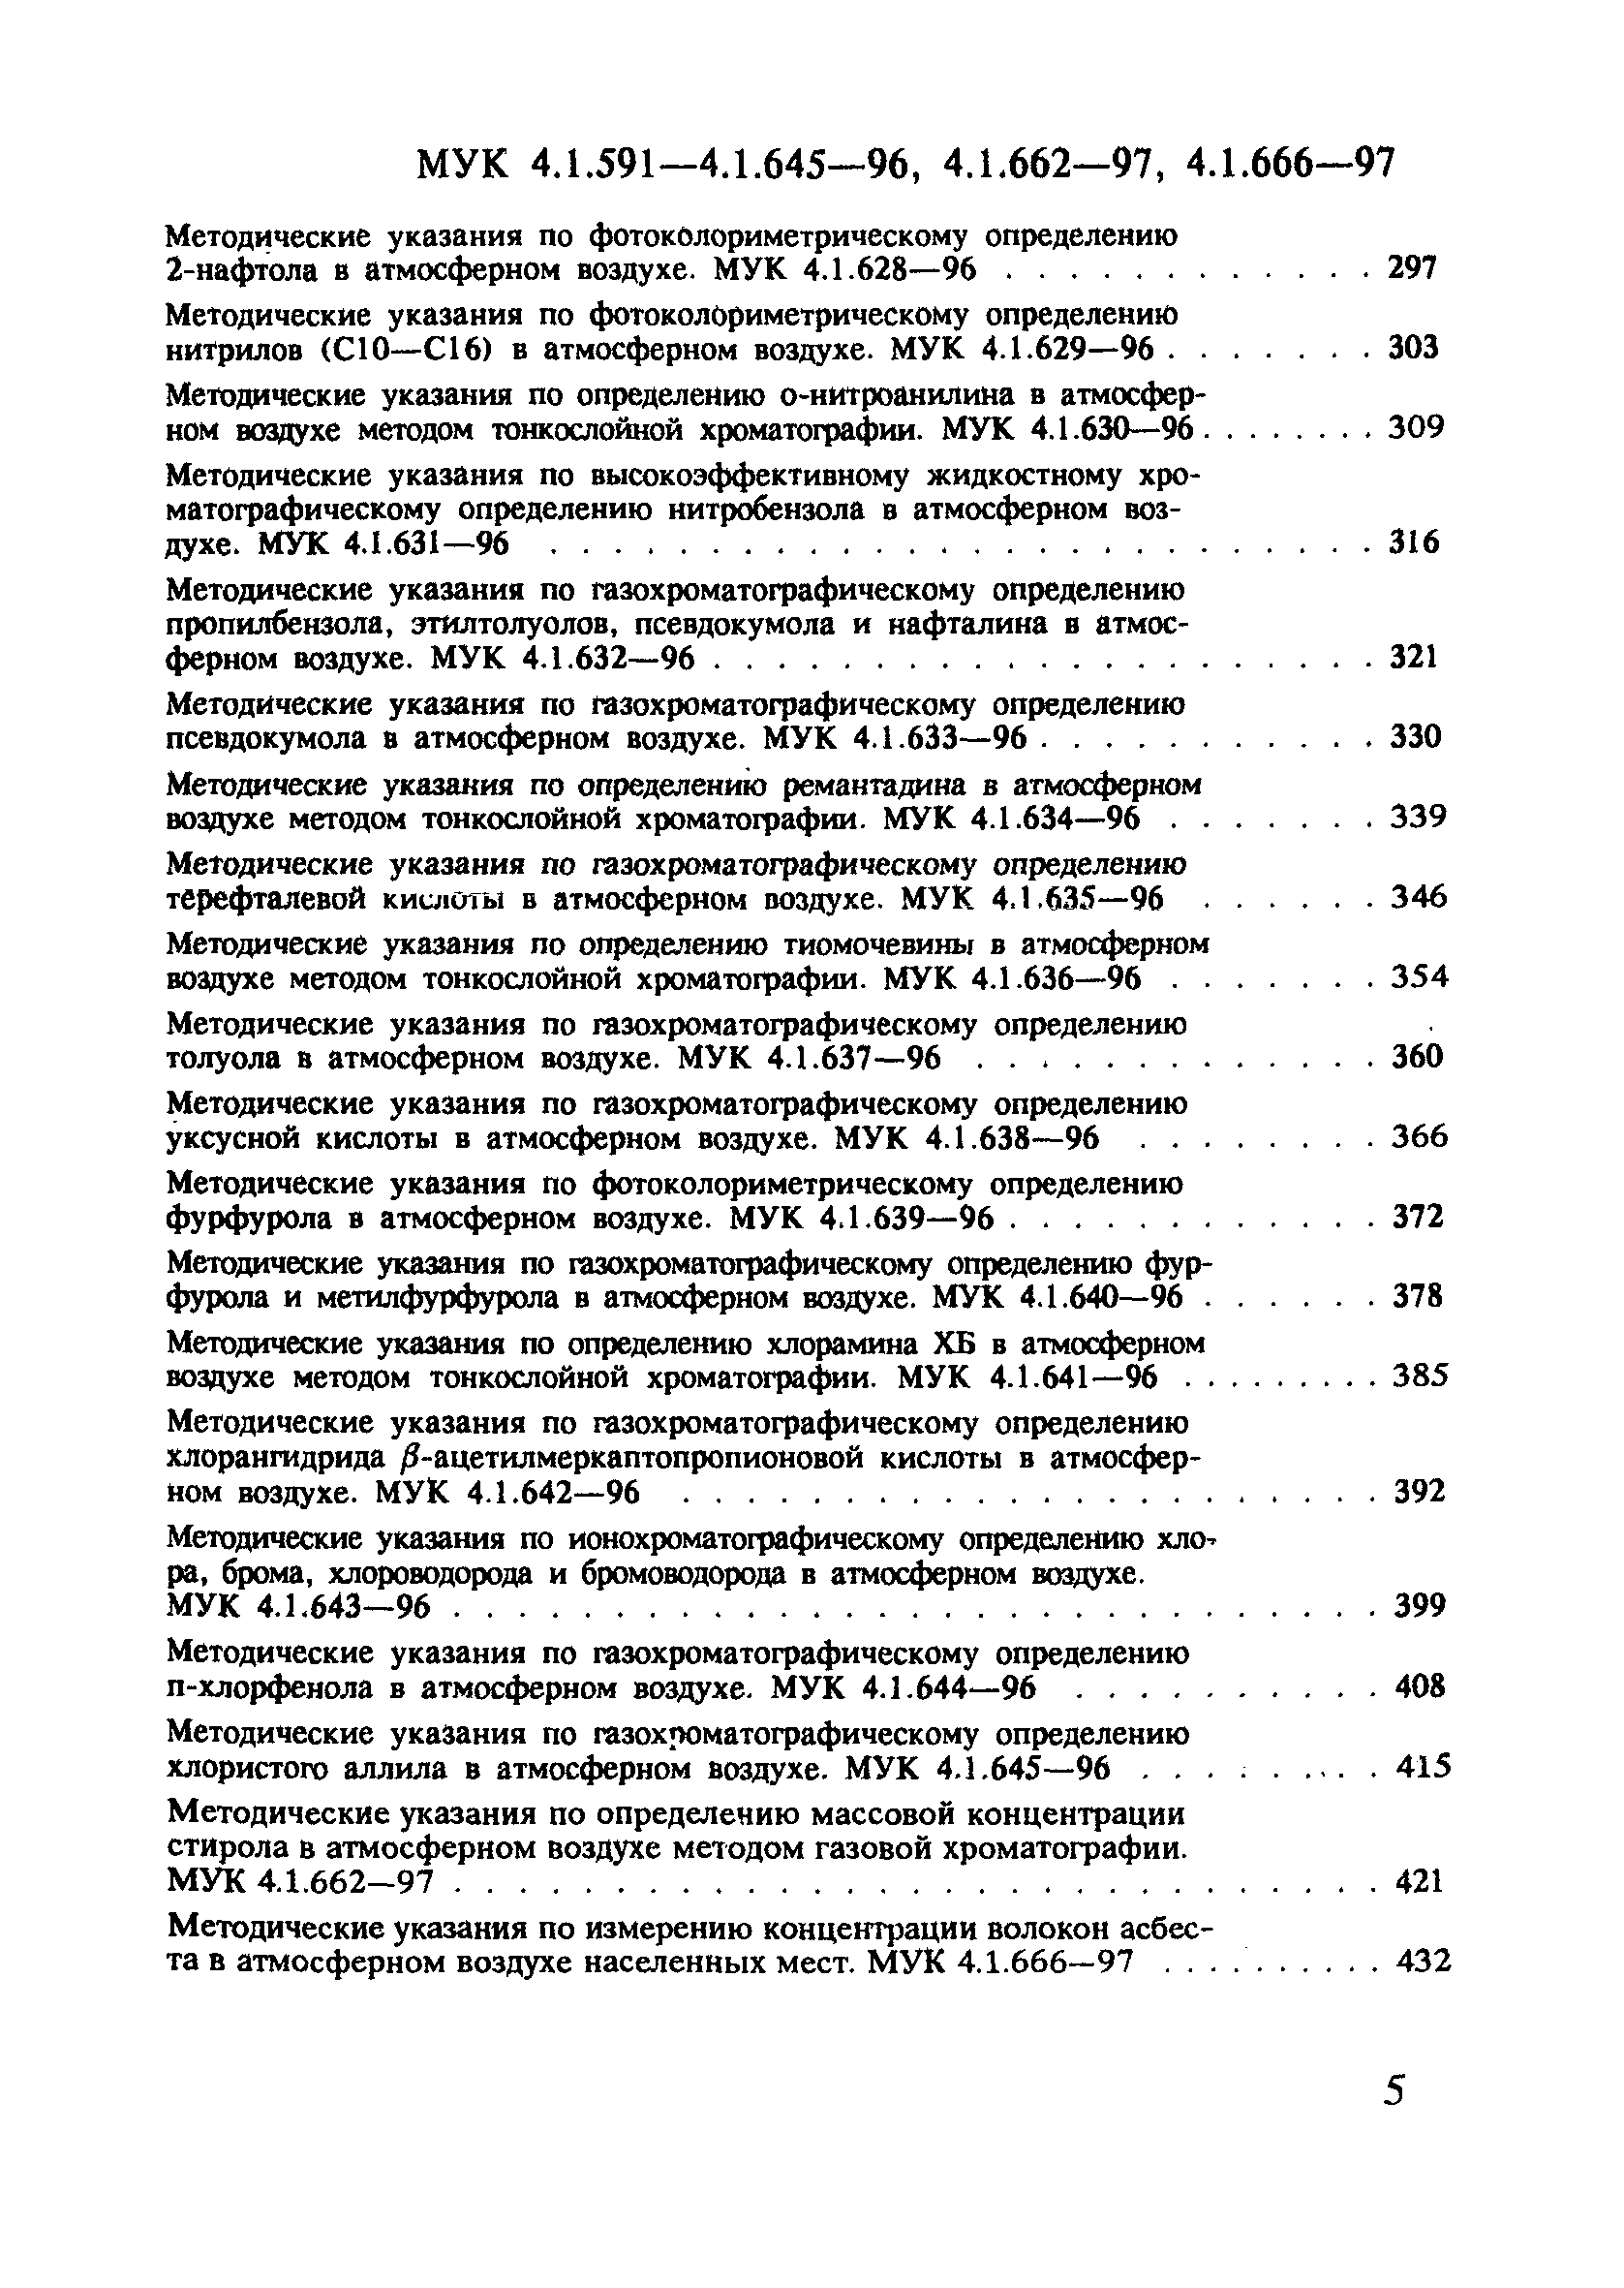 МУК 4.1.605-96